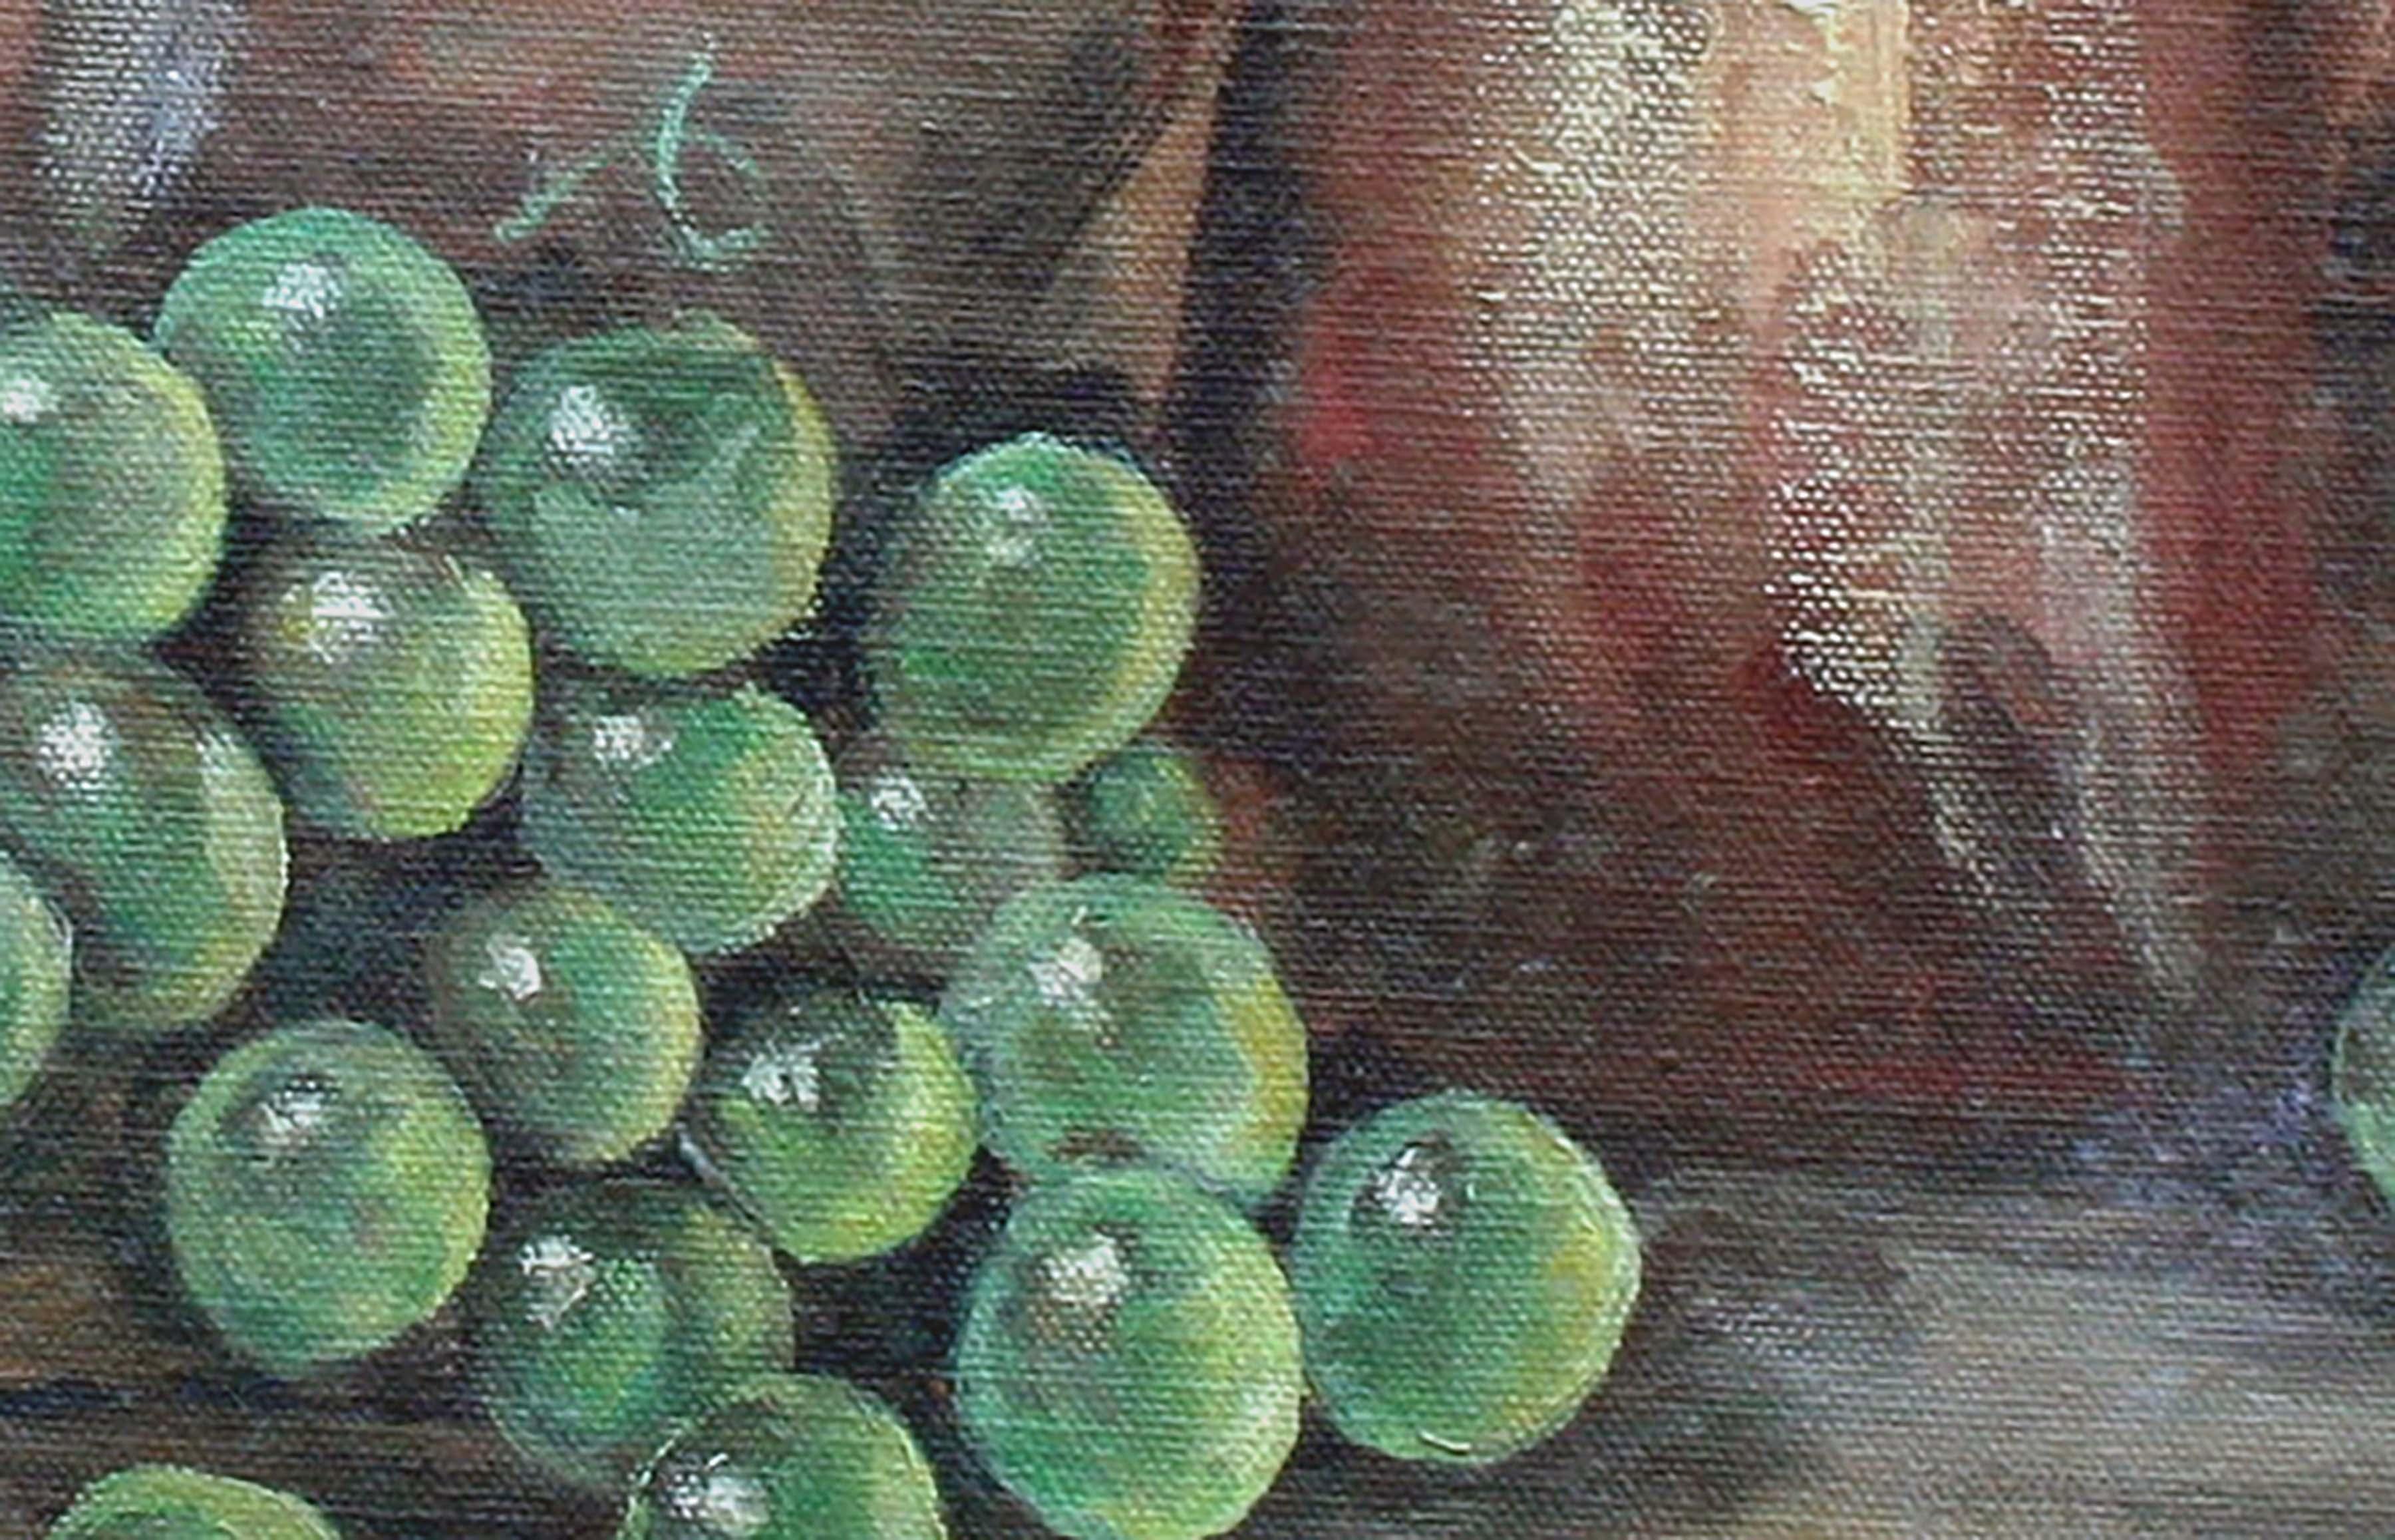 Pichet en cuivre et panier de raisins, nature morte vintage avec mur en brique - Impressionnisme américain Painting par Darlene Cantorna